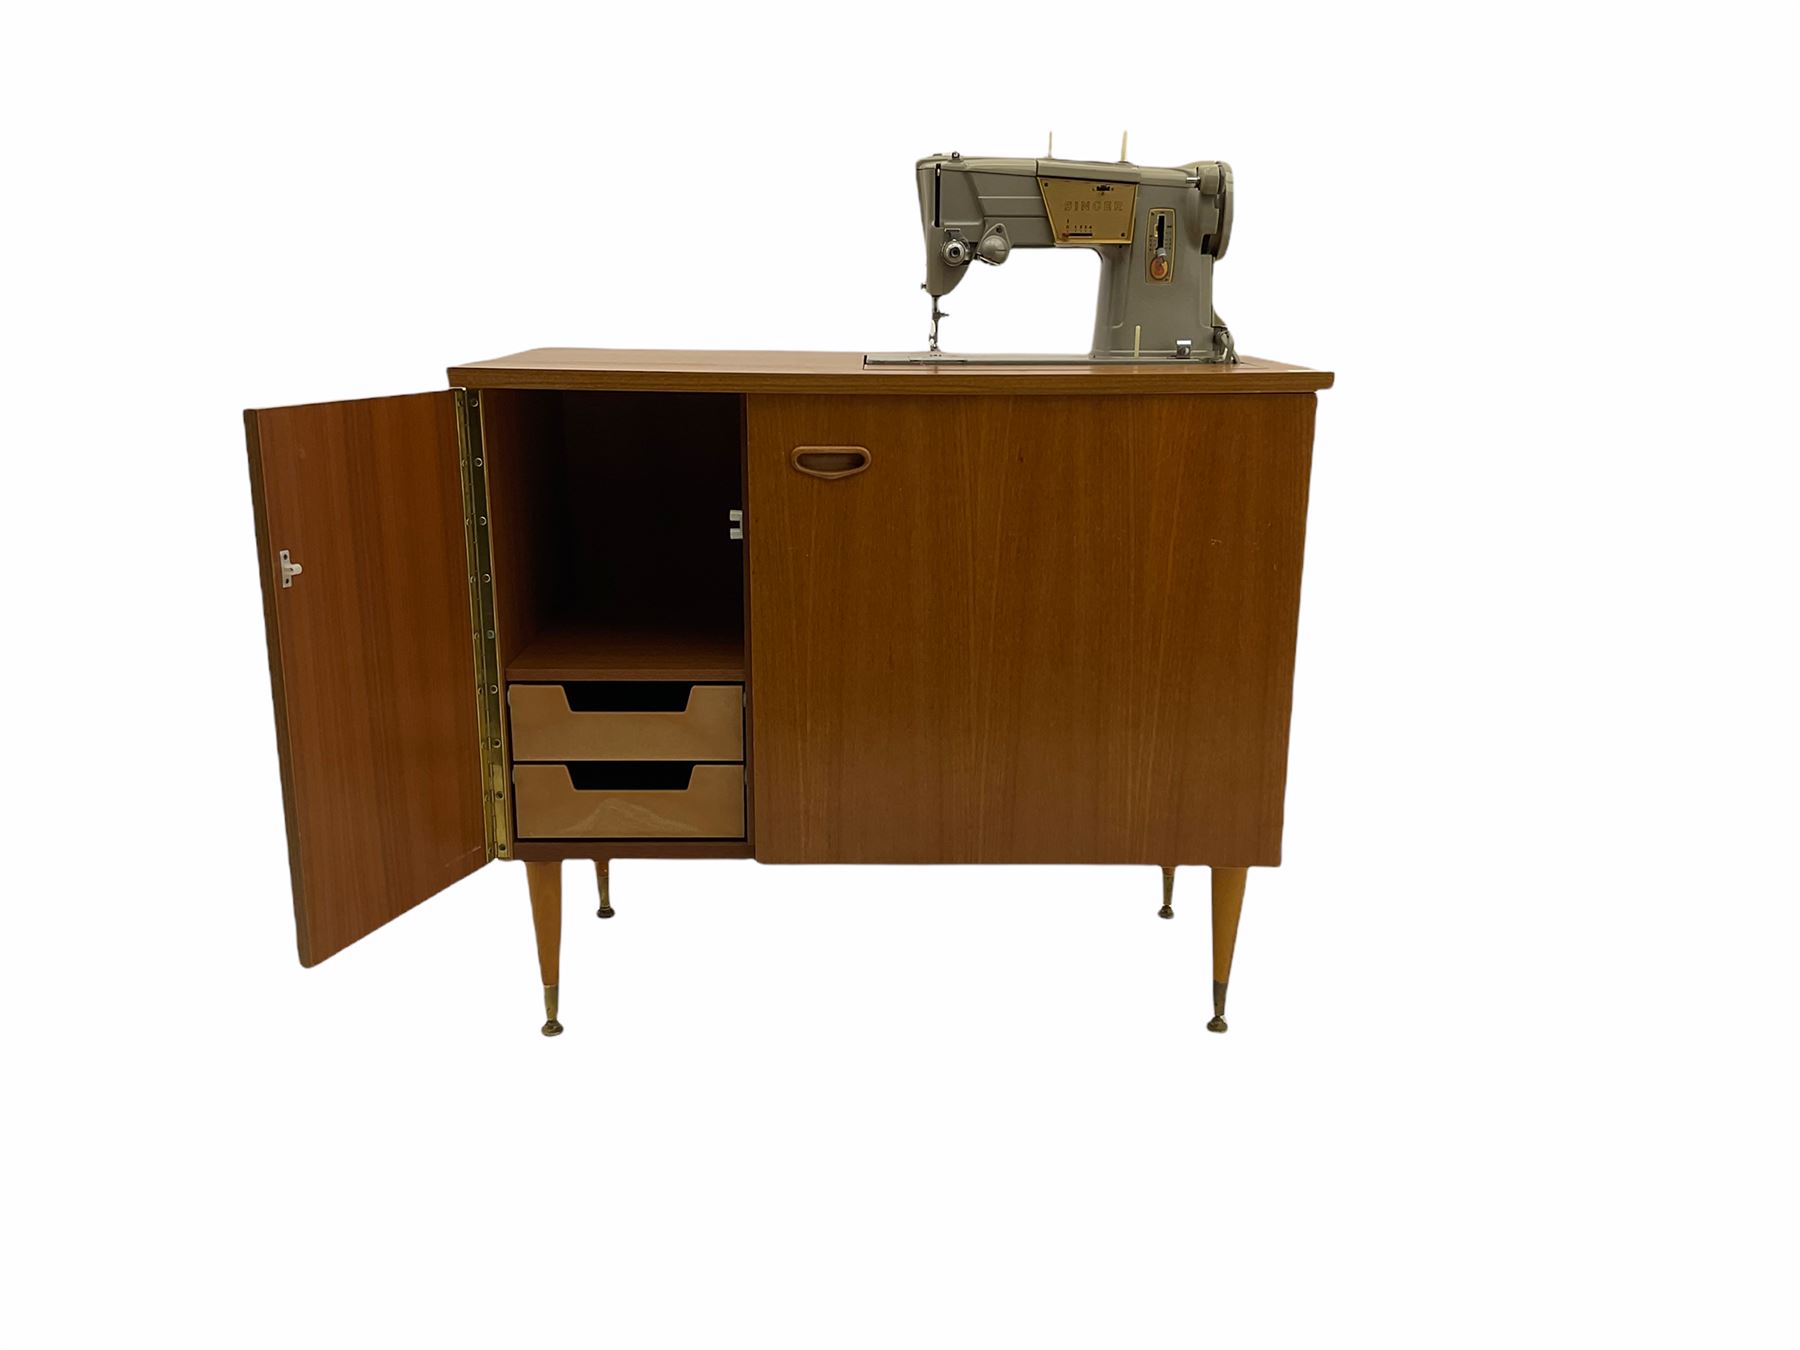 Singer electric sewing machine in teak worktable - Image 2 of 4